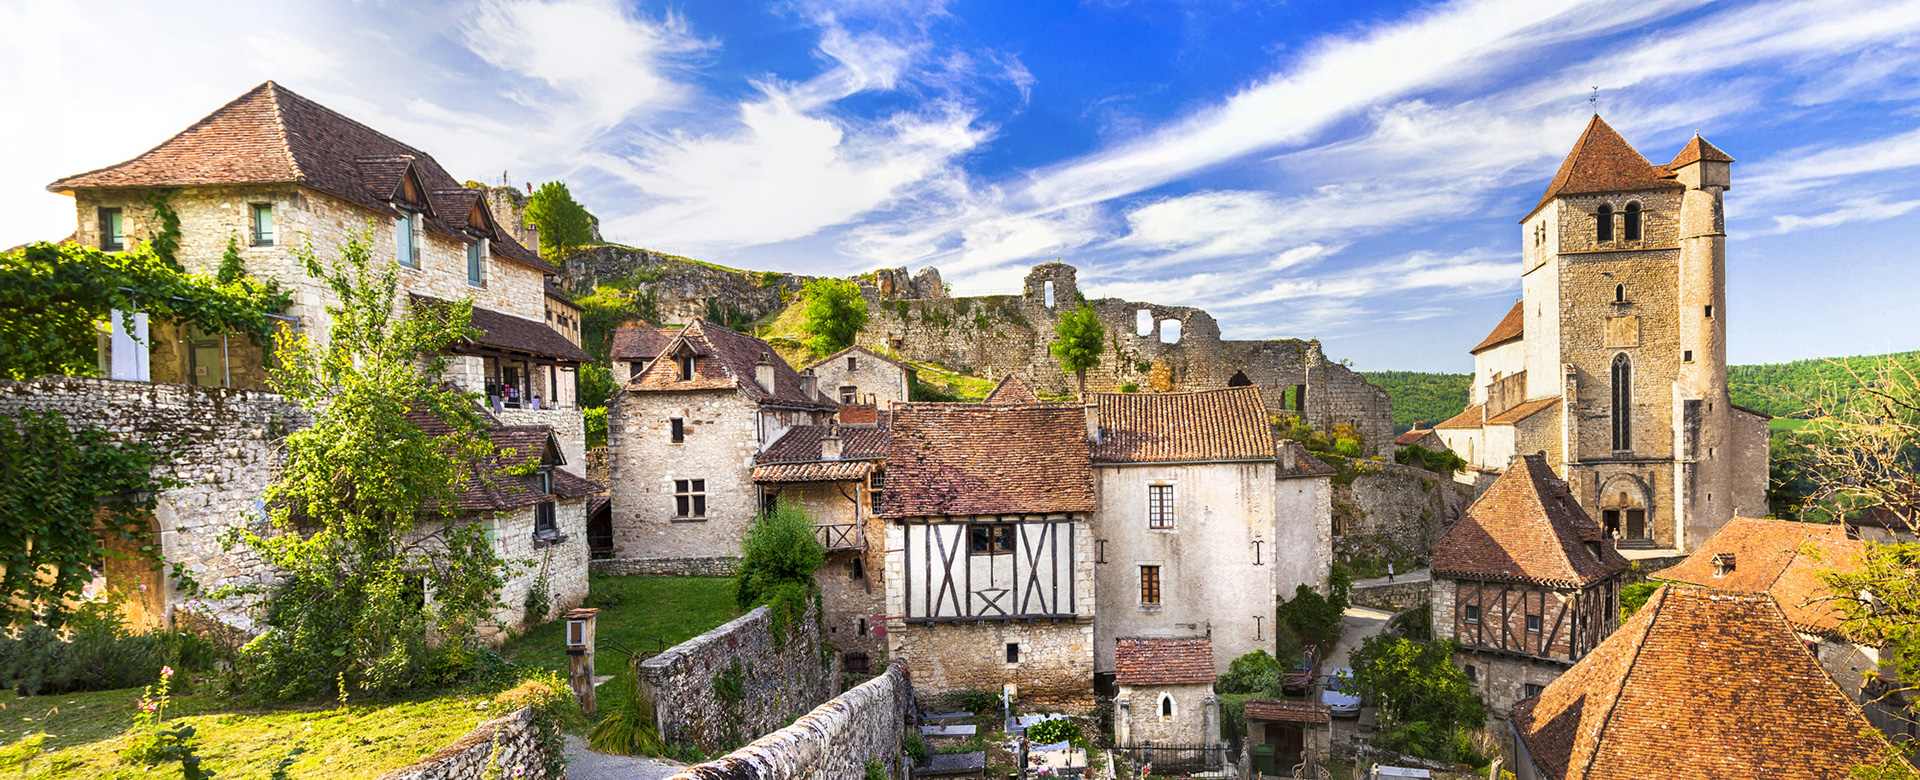 Les grands sites d'Occitanie, vue sur Saint Cirq Lapopie